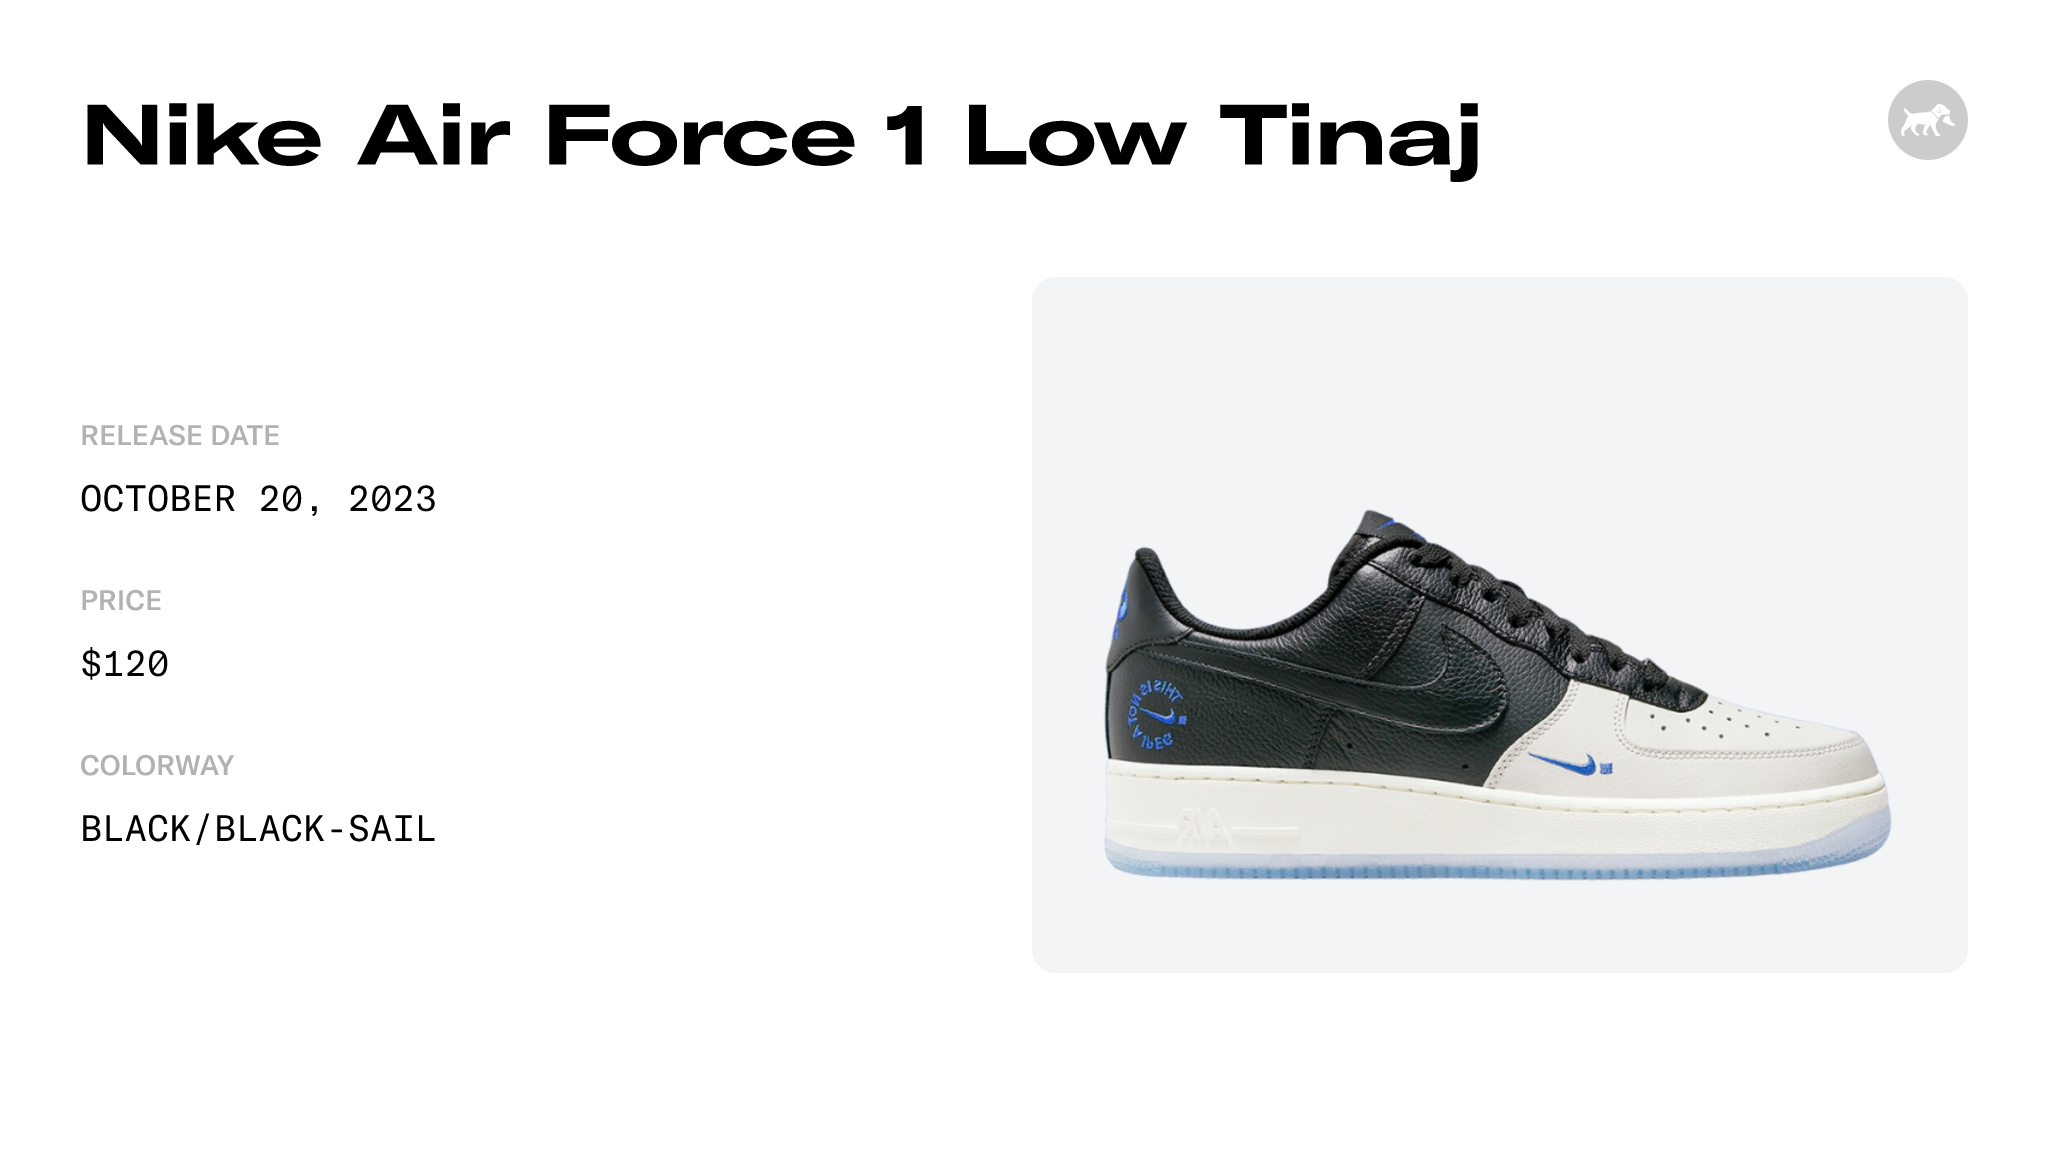 Nike .Swoosh Air Force 1 Low TINAJ